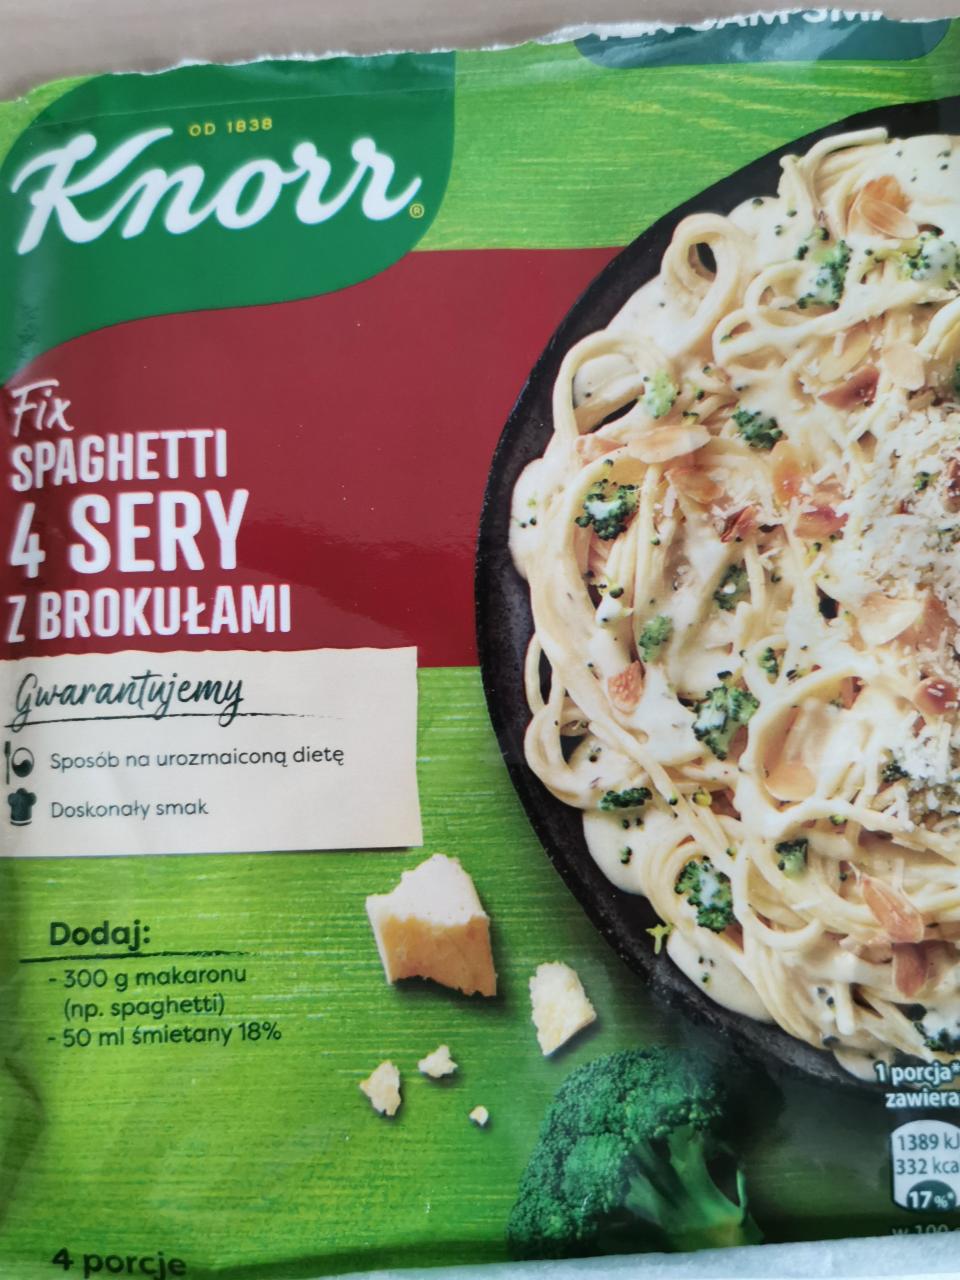 Zdjęcia - Fix spaghetti 4 sery z brokułami Knorr